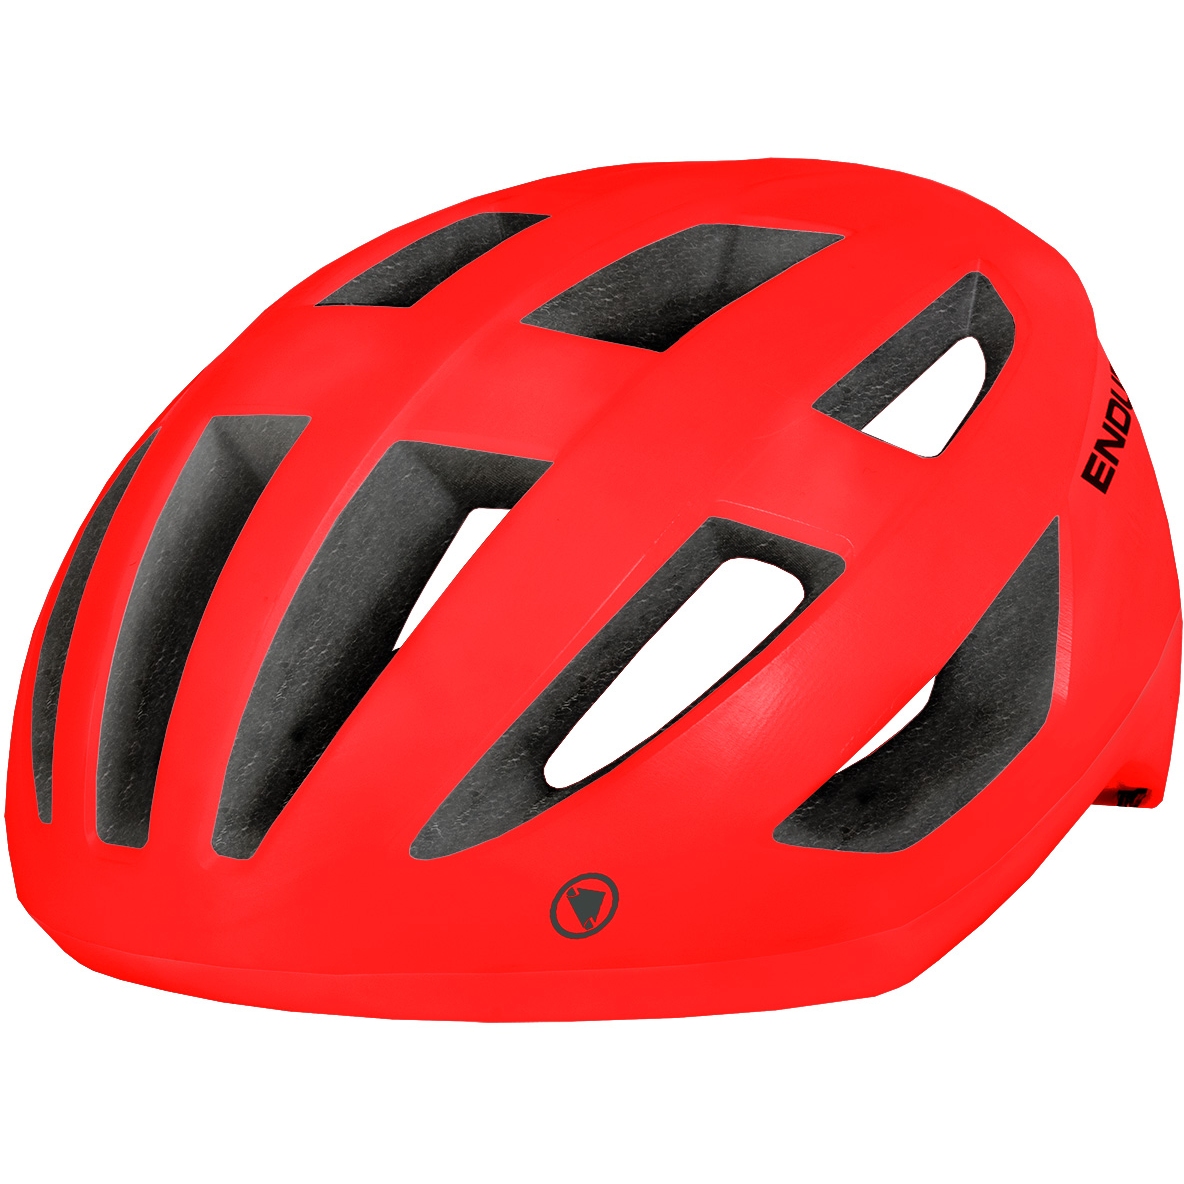 Produktbild von Endura Xtract MIPS® Helm - rot